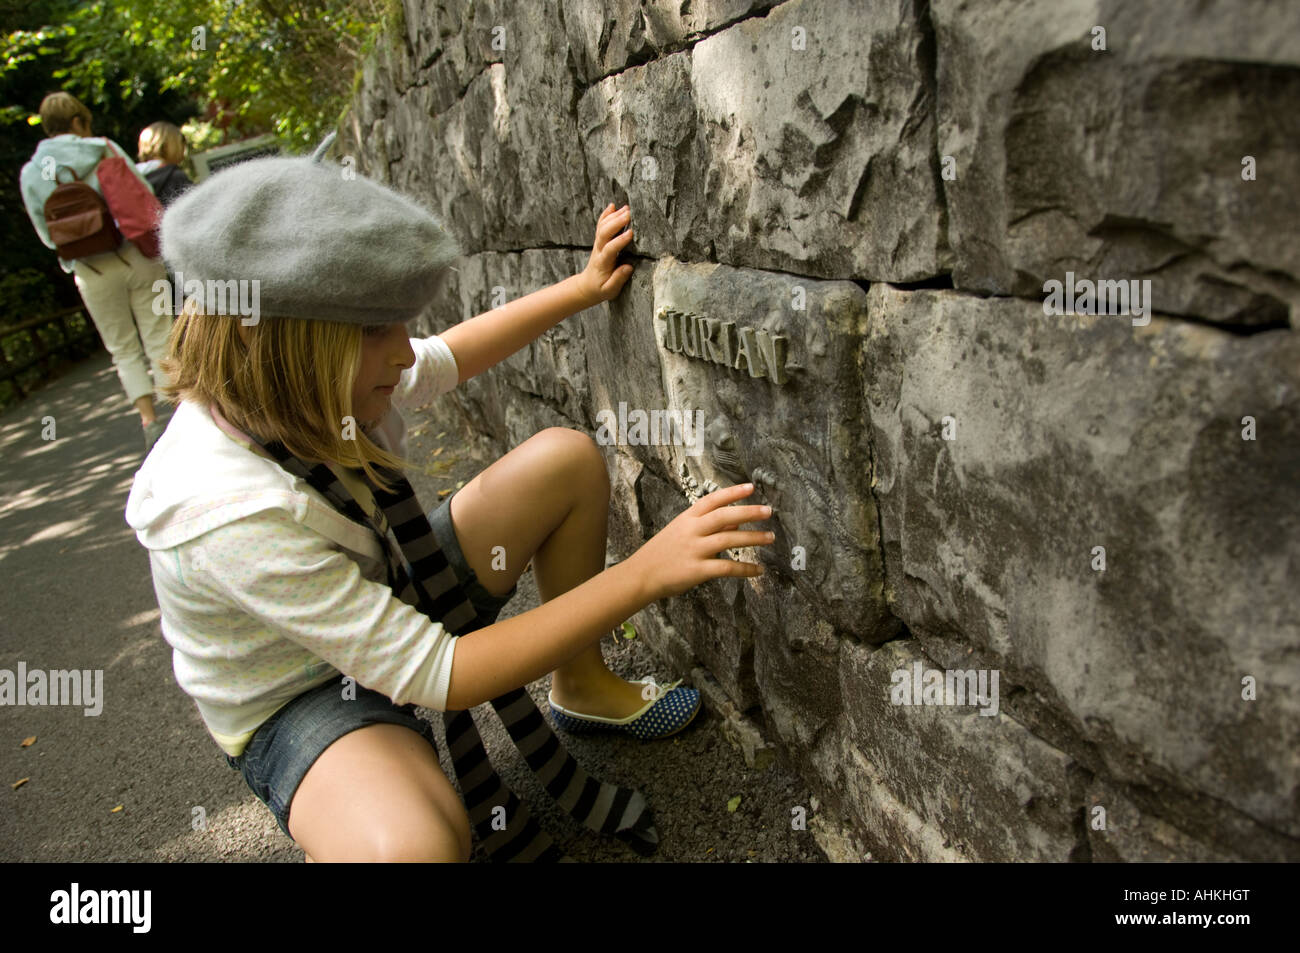 Enfant à la roche à mur à Dan yr Ogof grottes national du pays de Galles Brecon Beacons National Park Powys Pays de Galles Banque D'Images